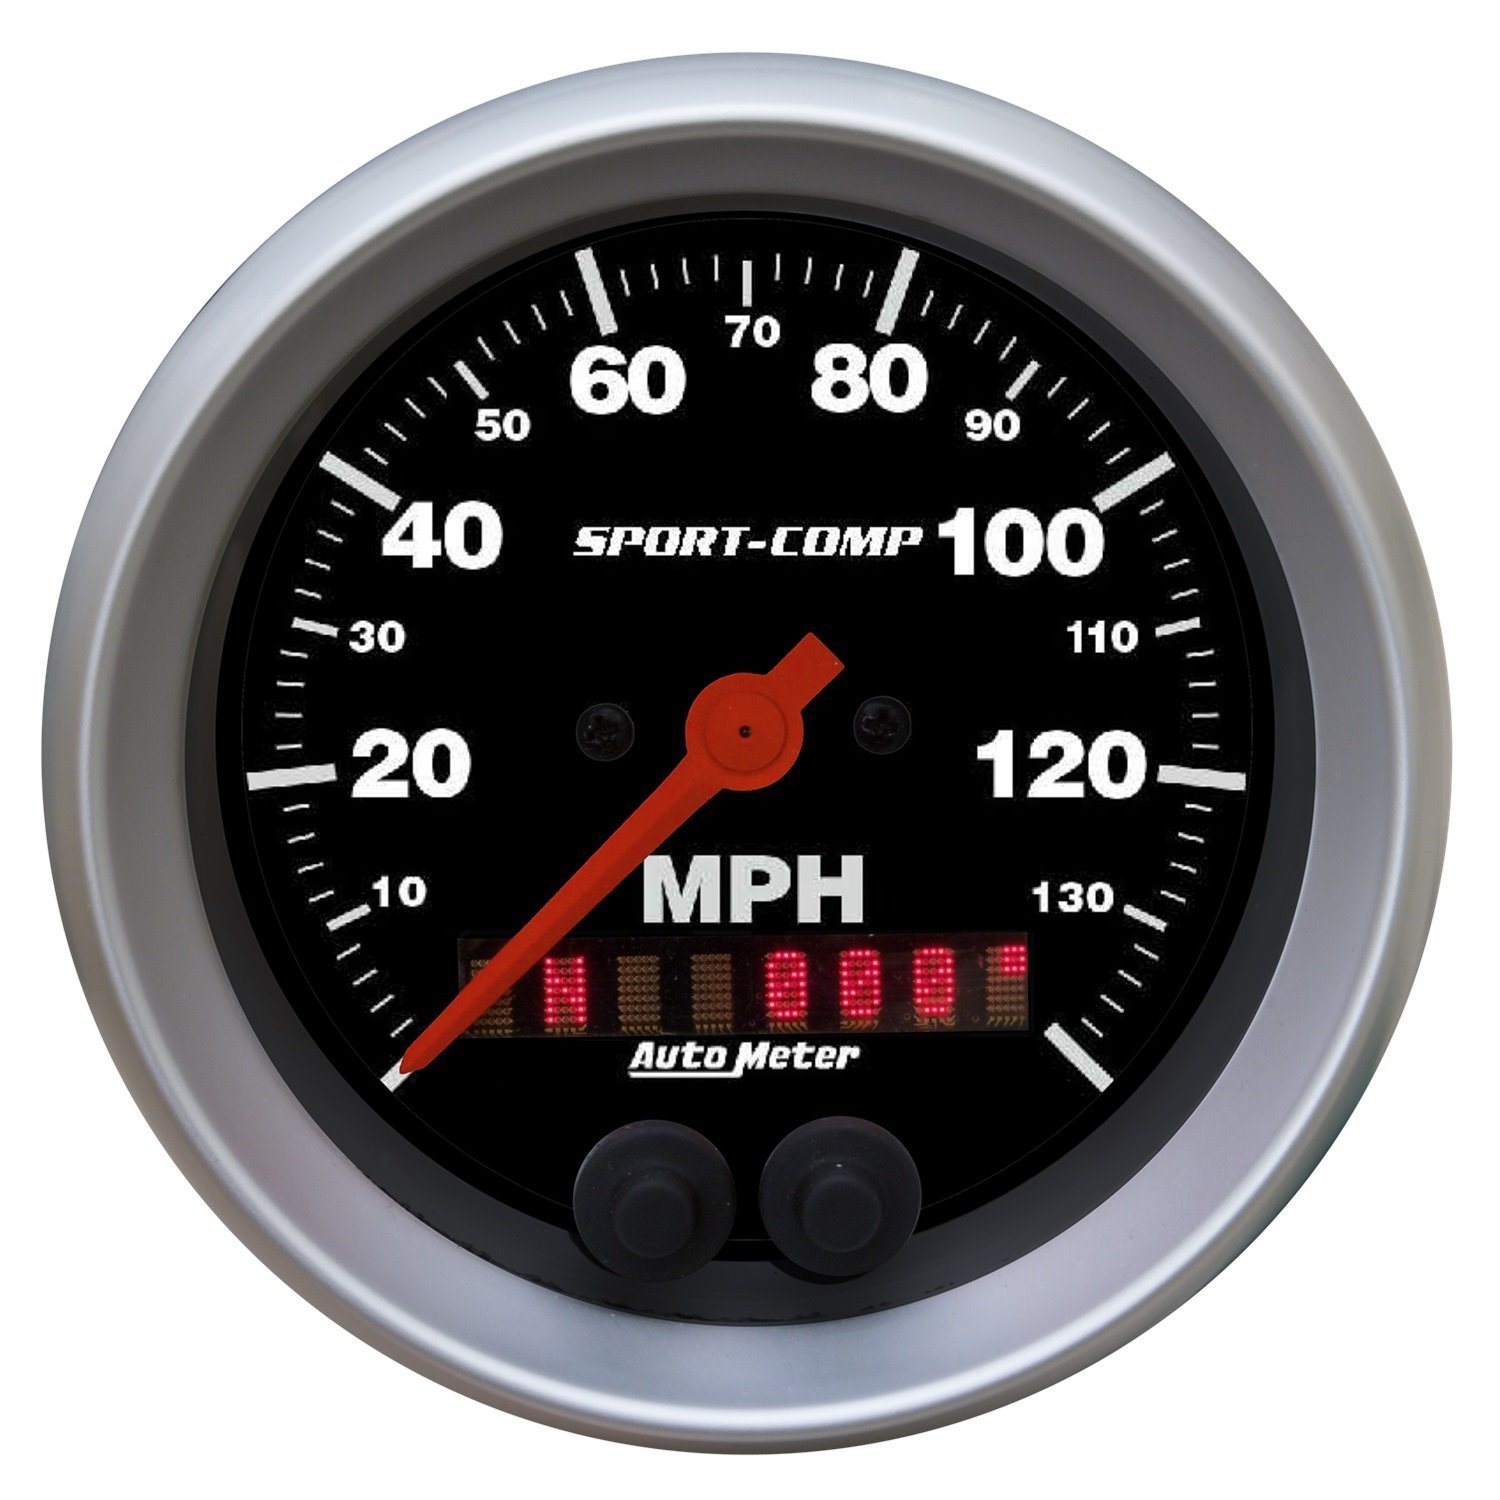 Sport-Comp GPS Speedometer 3-3/8"